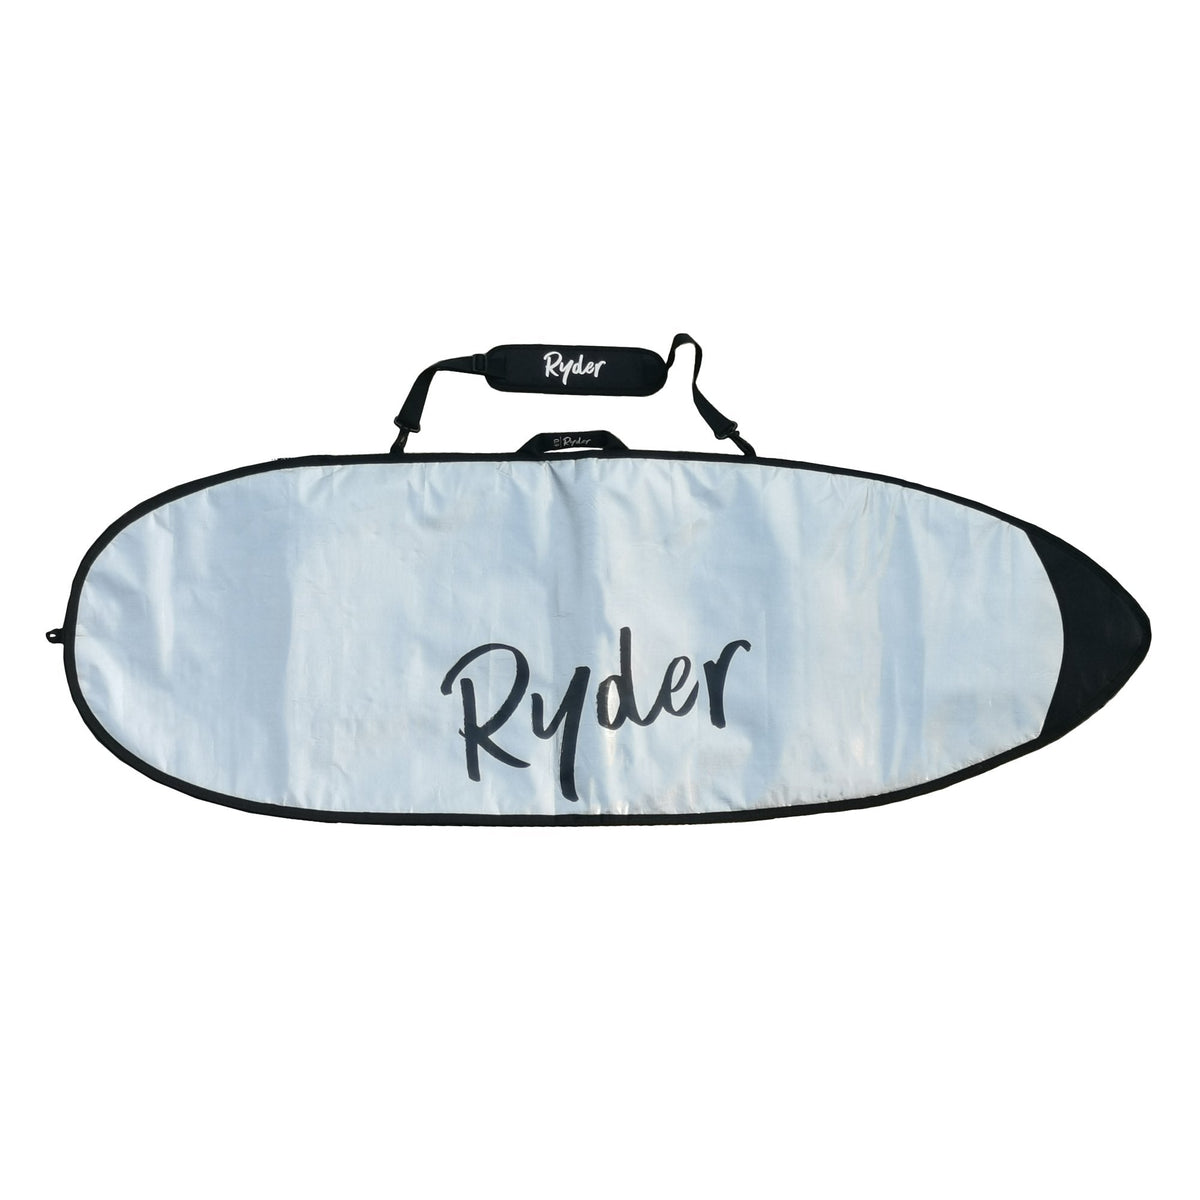 Ryder Surfboard Cover - 6ft6inch - Ryder Boards